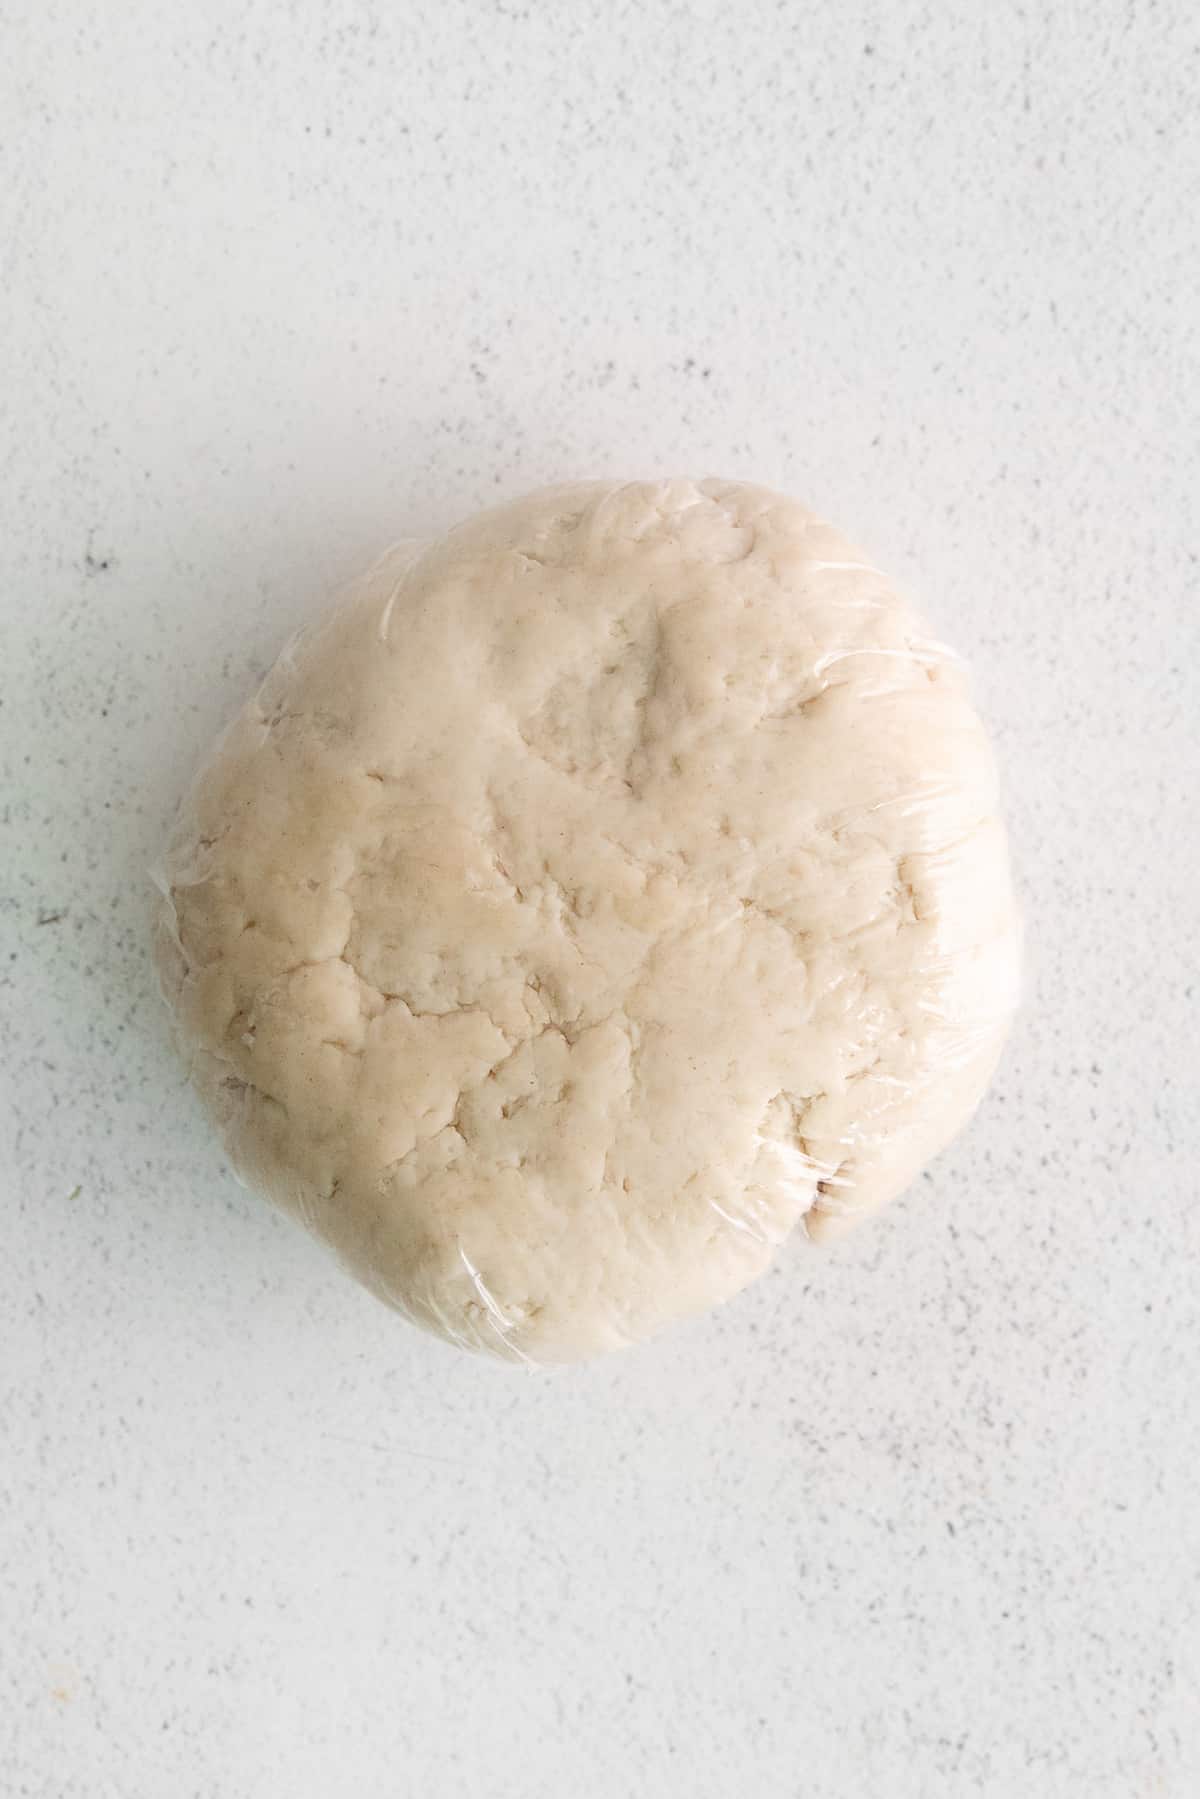 pasta dough ball.